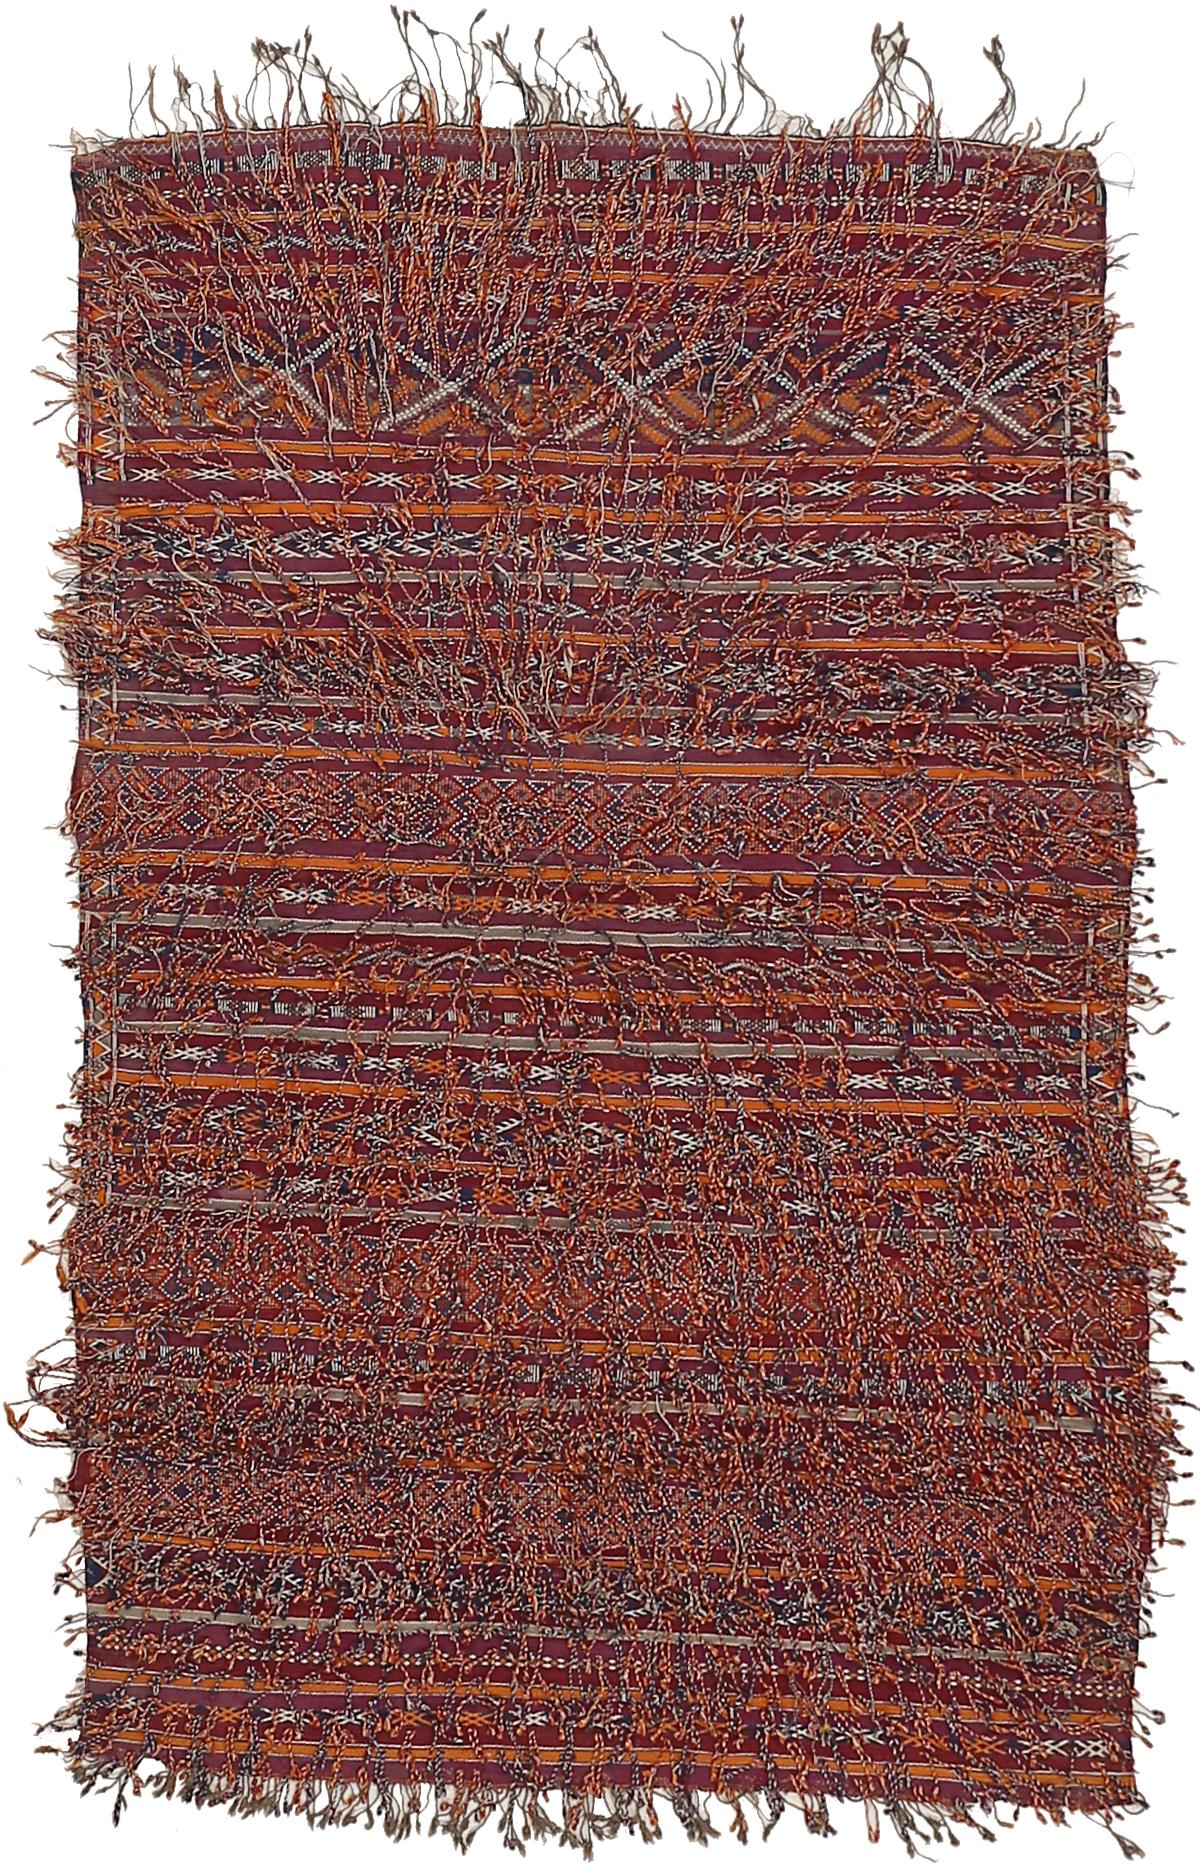 Ein seltener Berberteppich in Mischtechnik, der dem Volk der Zemmour im marokkanischen Mittleren Atlas zugeschrieben wird und ursprünglich als Satteldecke diente - ein Gegenstand von großem Prestige bei den Berberstämmen. Das Muster besteht aus